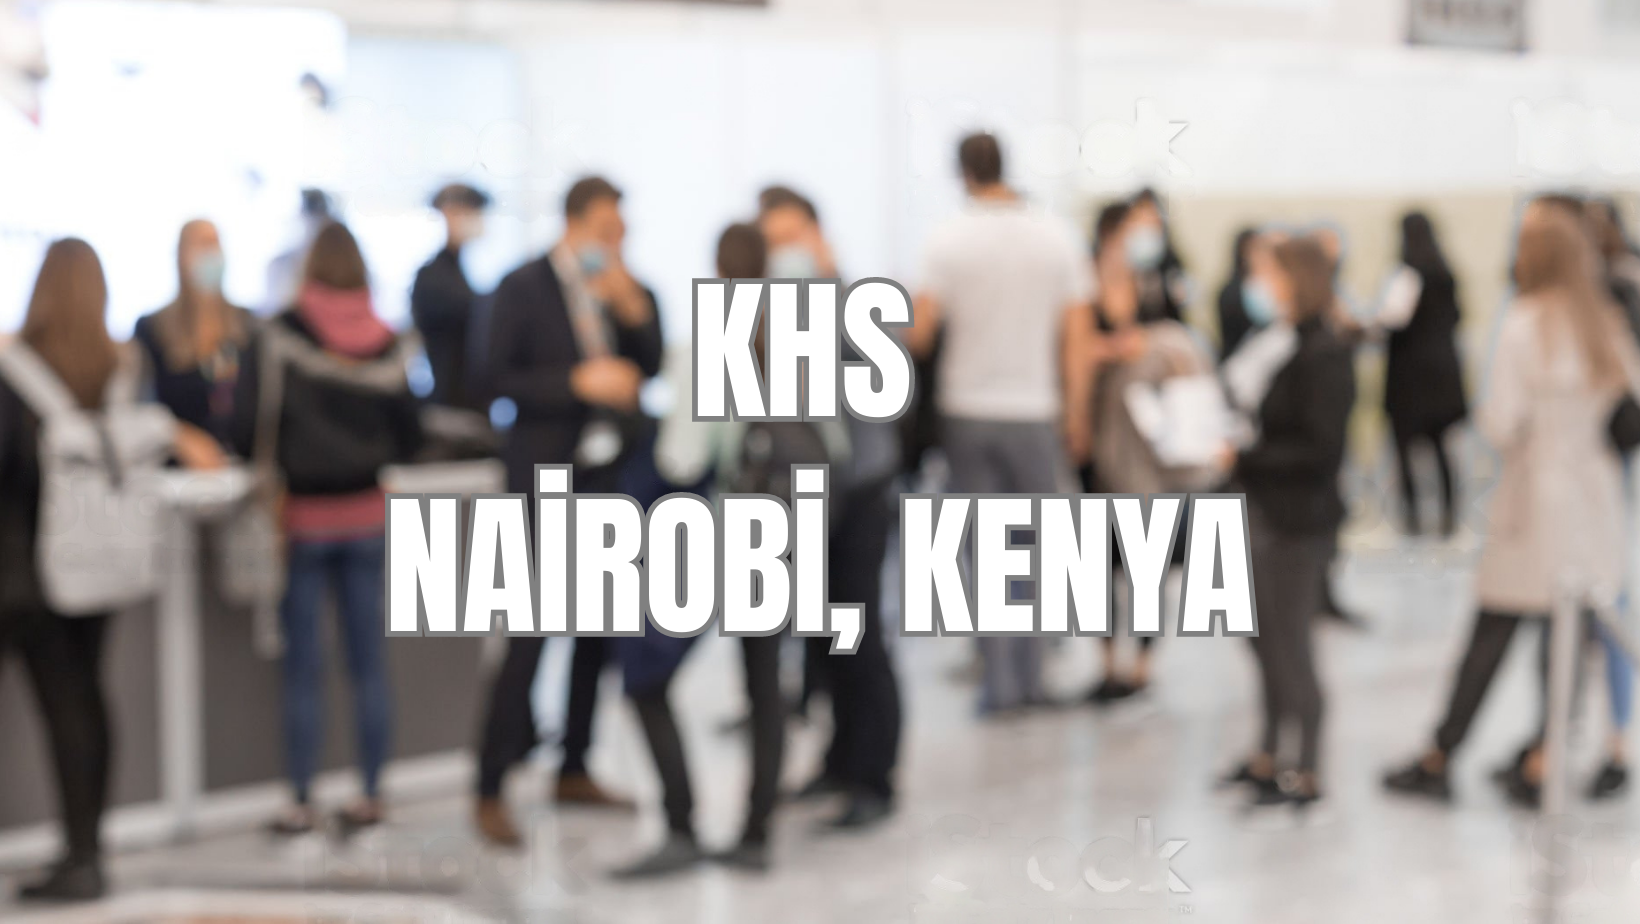 KHS East Africa Nairobi, Keny